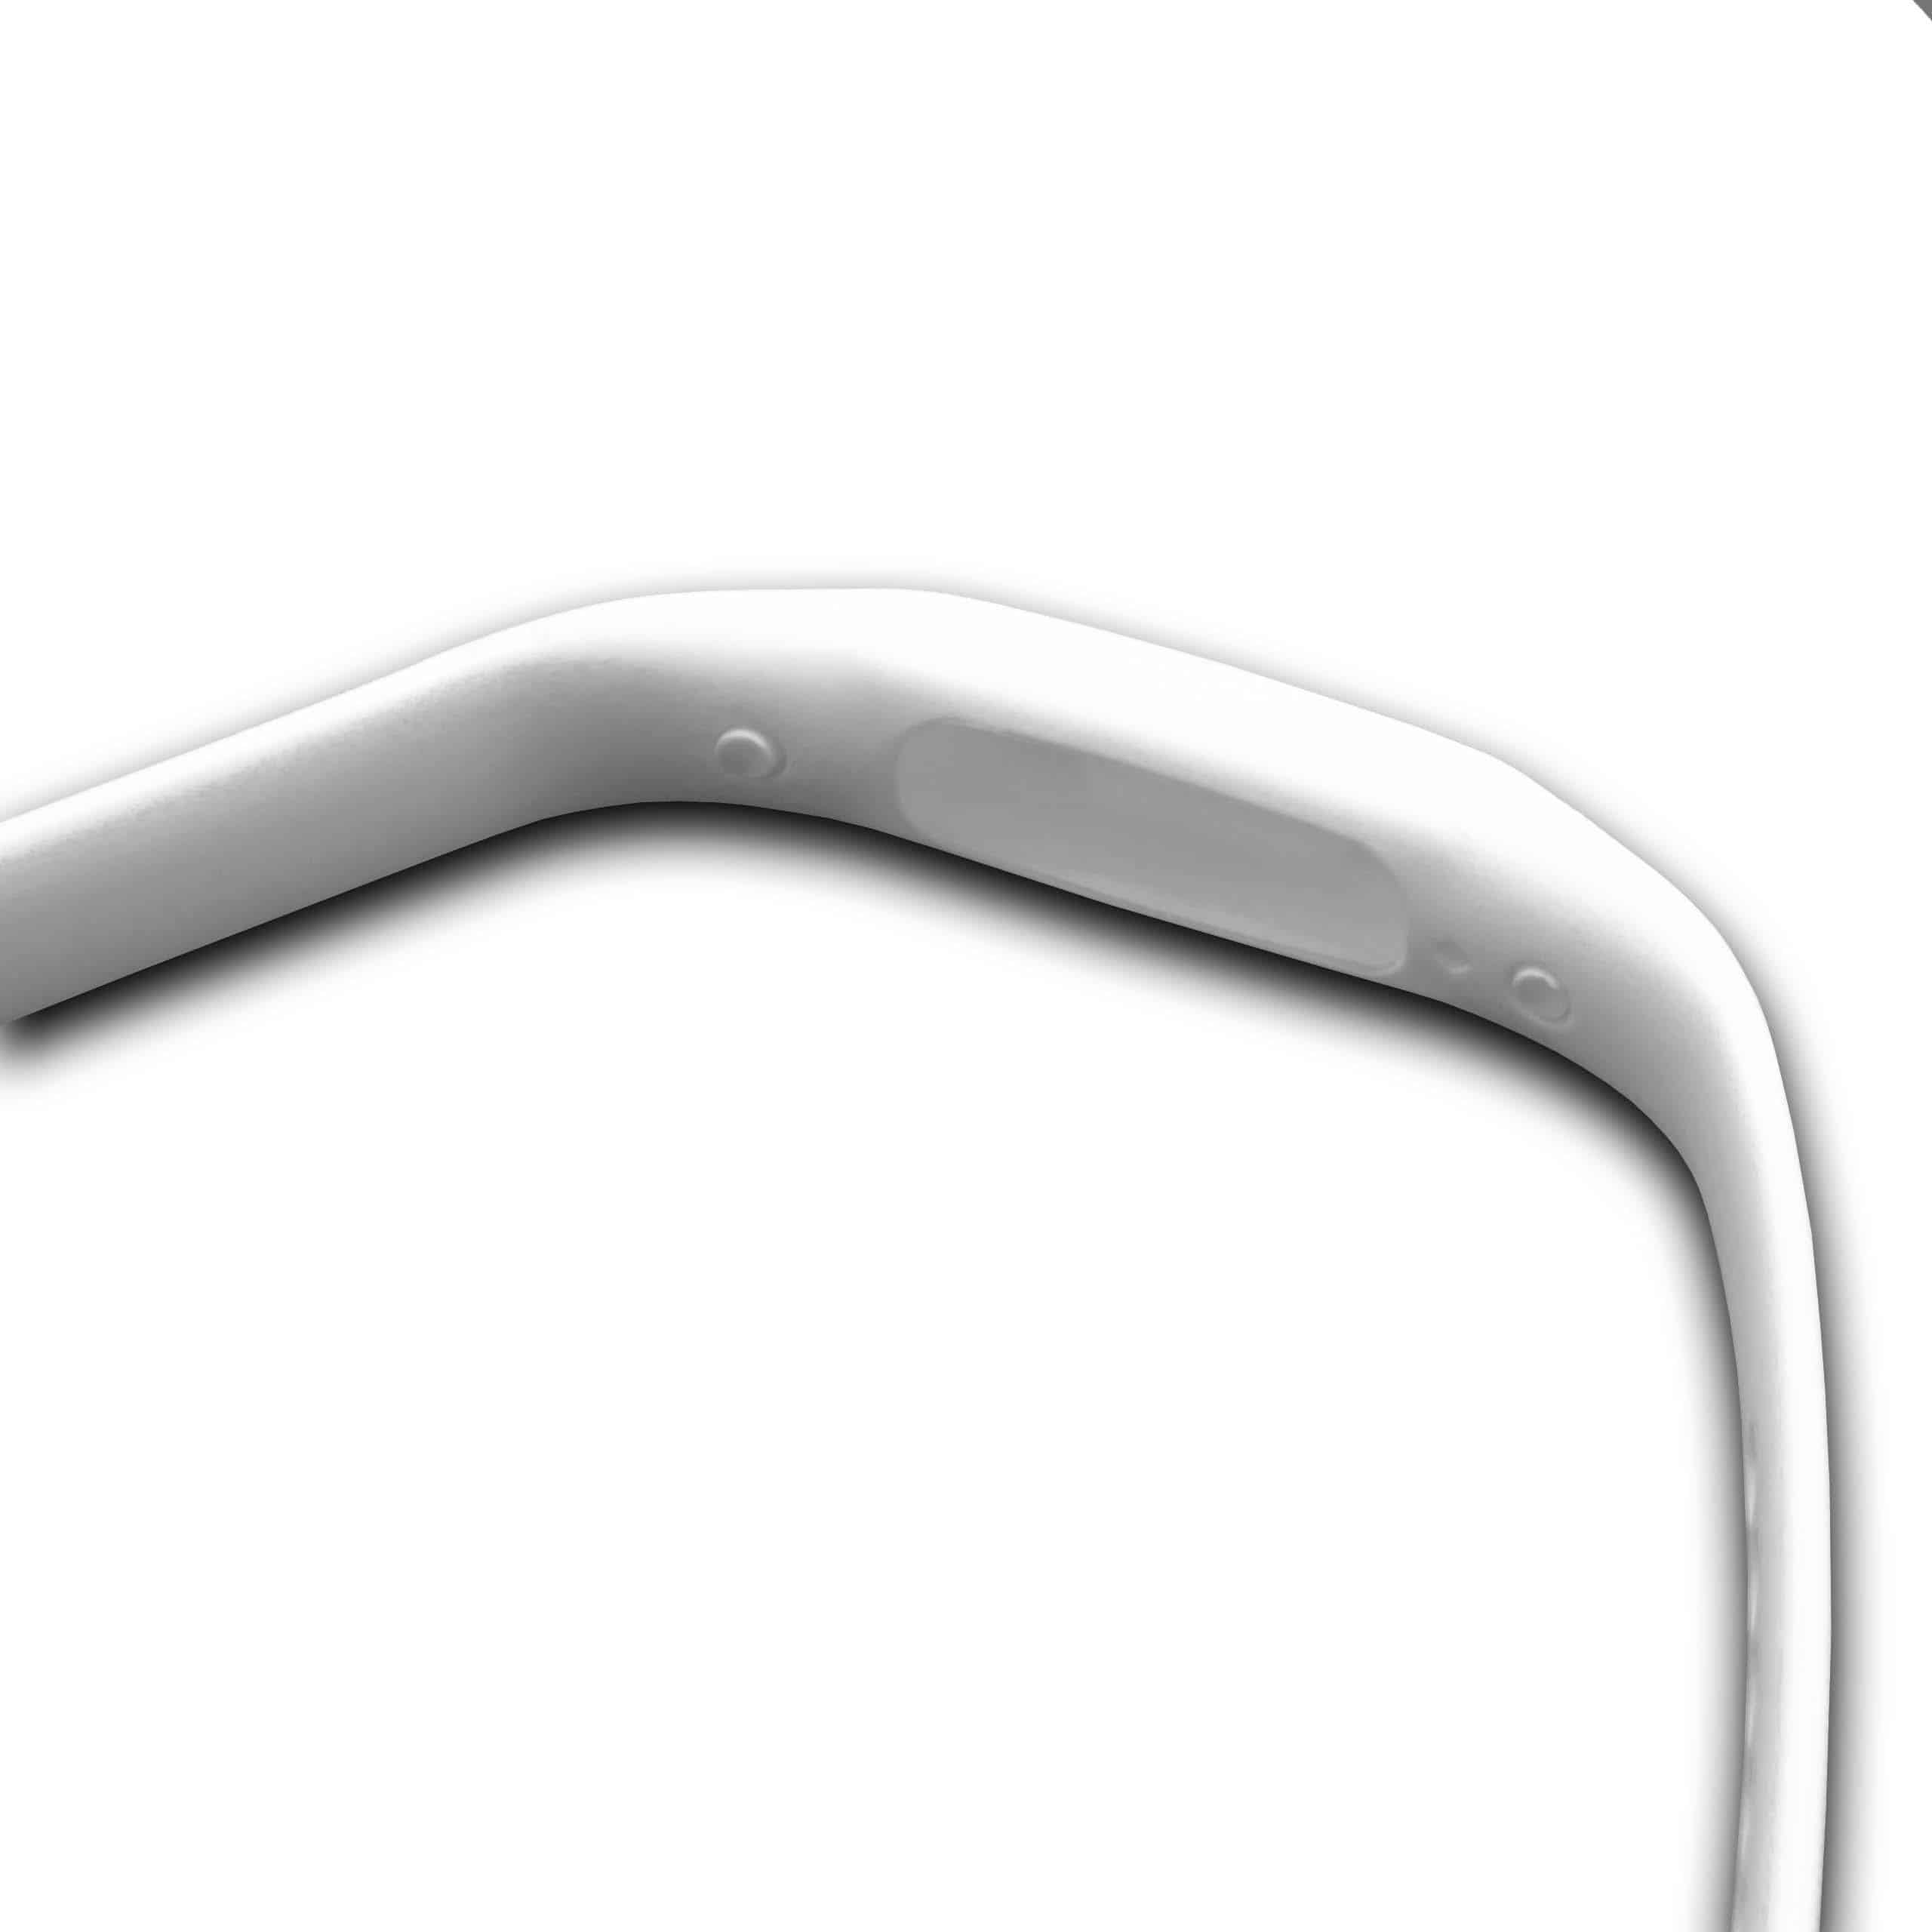 Bracelet pour montre intelligente Fitbit Flex - 24 cm de long, 11mm de large, blanc